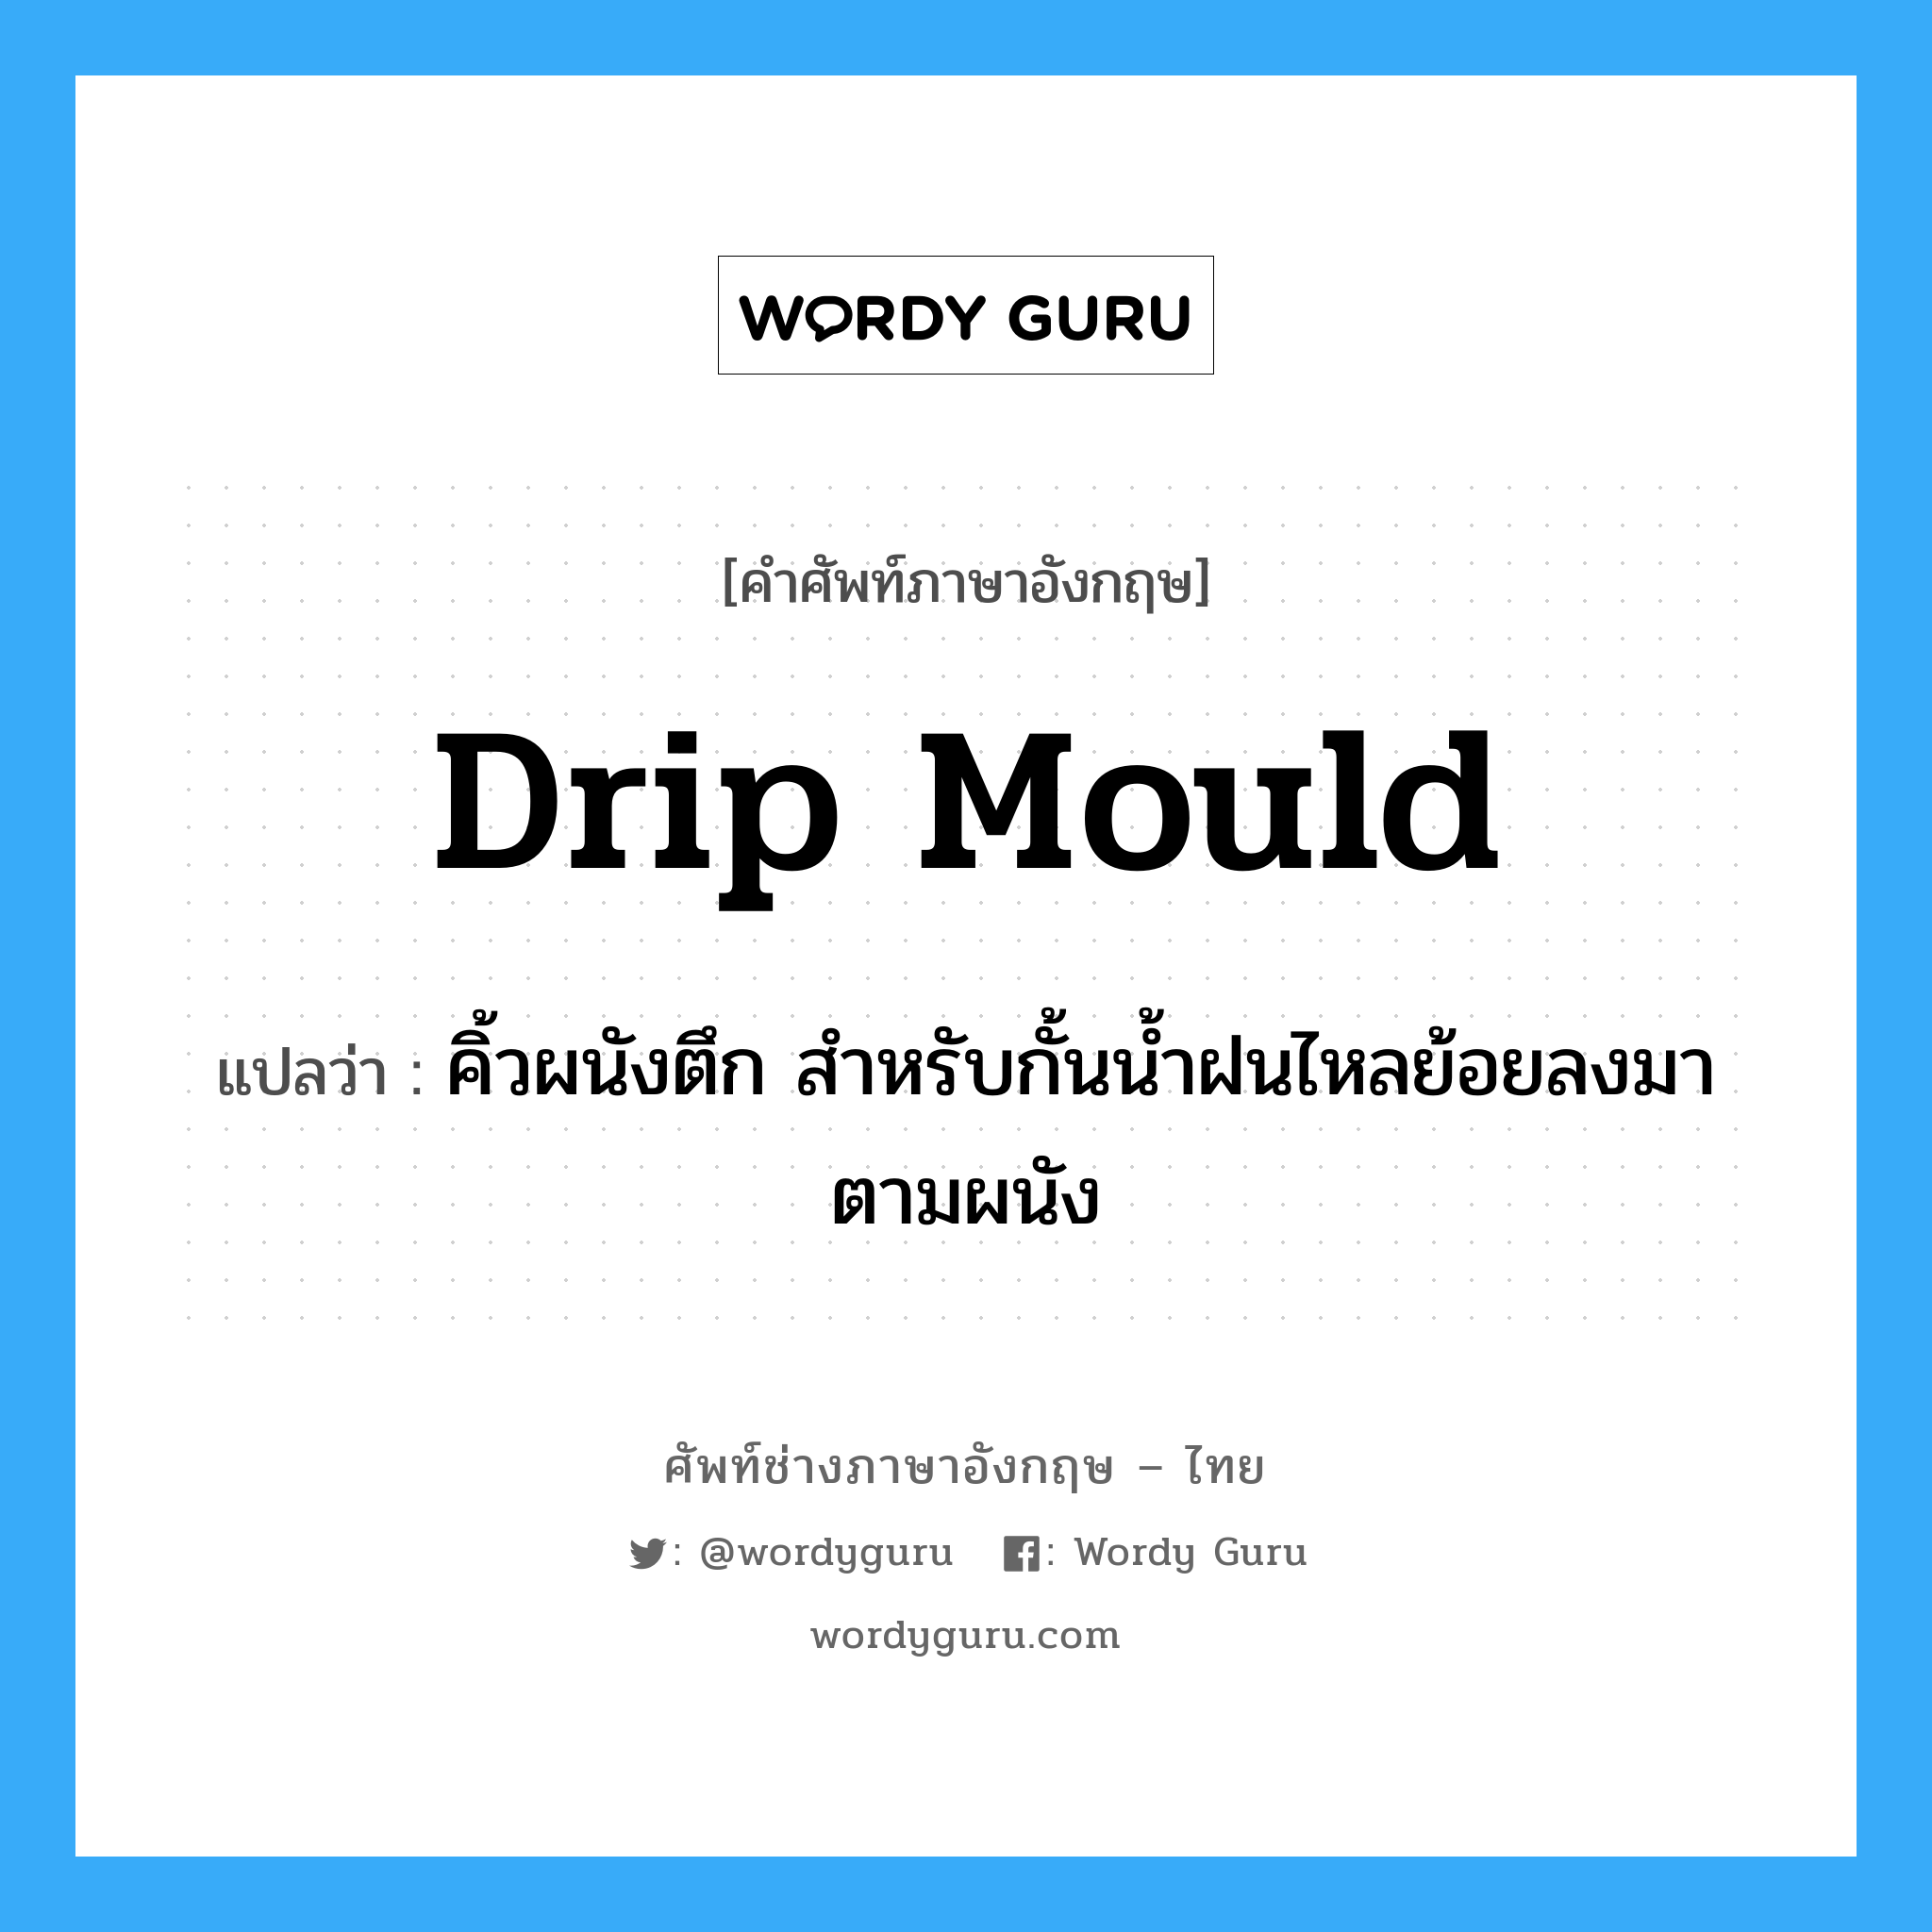 drip mould แปลว่า?, คำศัพท์ช่างภาษาอังกฤษ - ไทย drip mould คำศัพท์ภาษาอังกฤษ drip mould แปลว่า คิ้วผนังตึก สำหรับกั้นน้ำฝนไหลย้อยลงมาตามผนัง